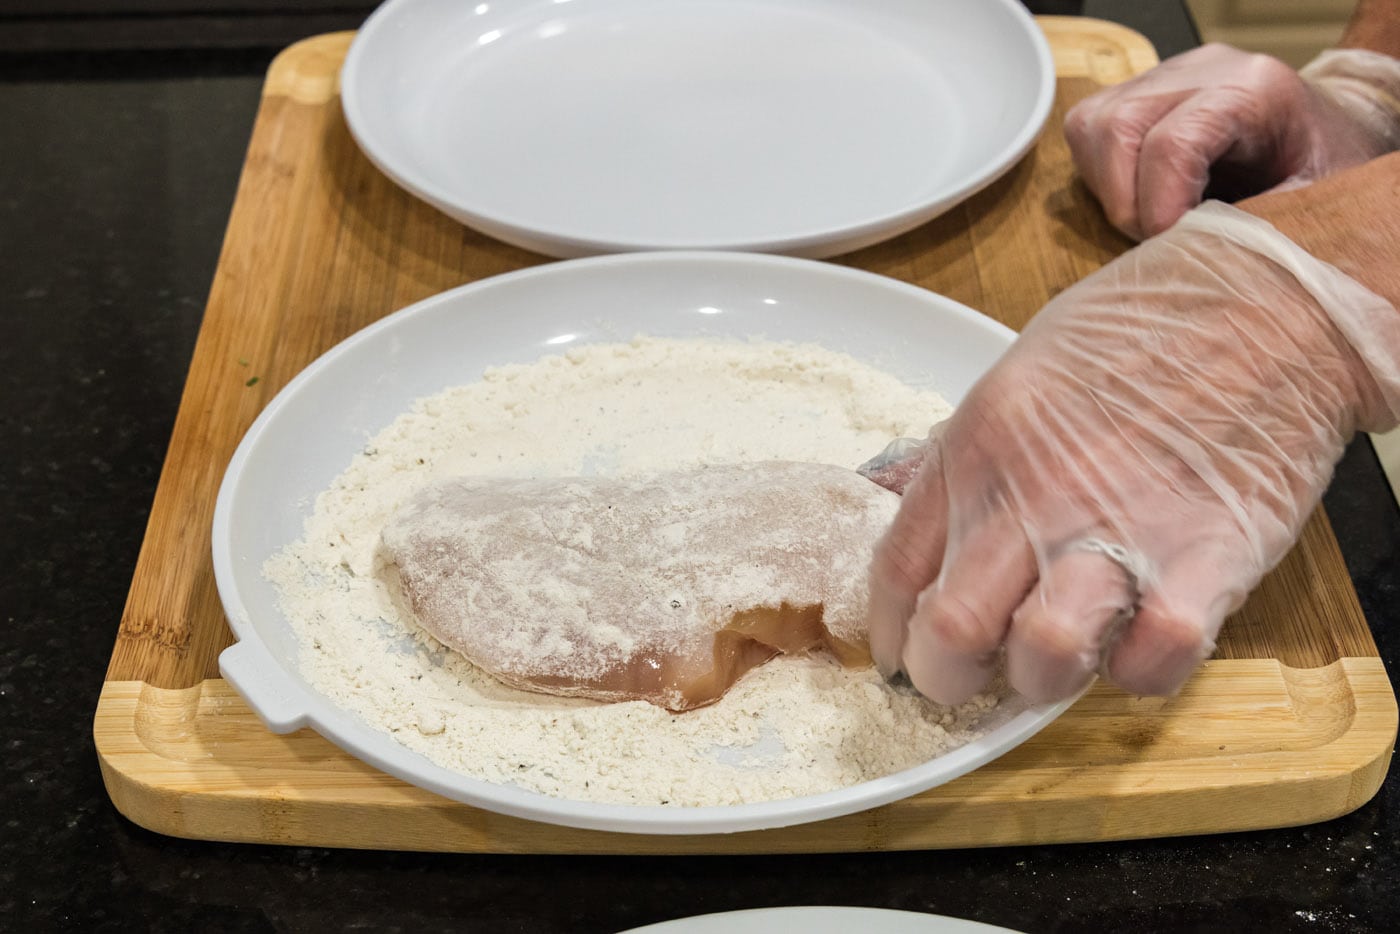 dredging chicken breast in flour